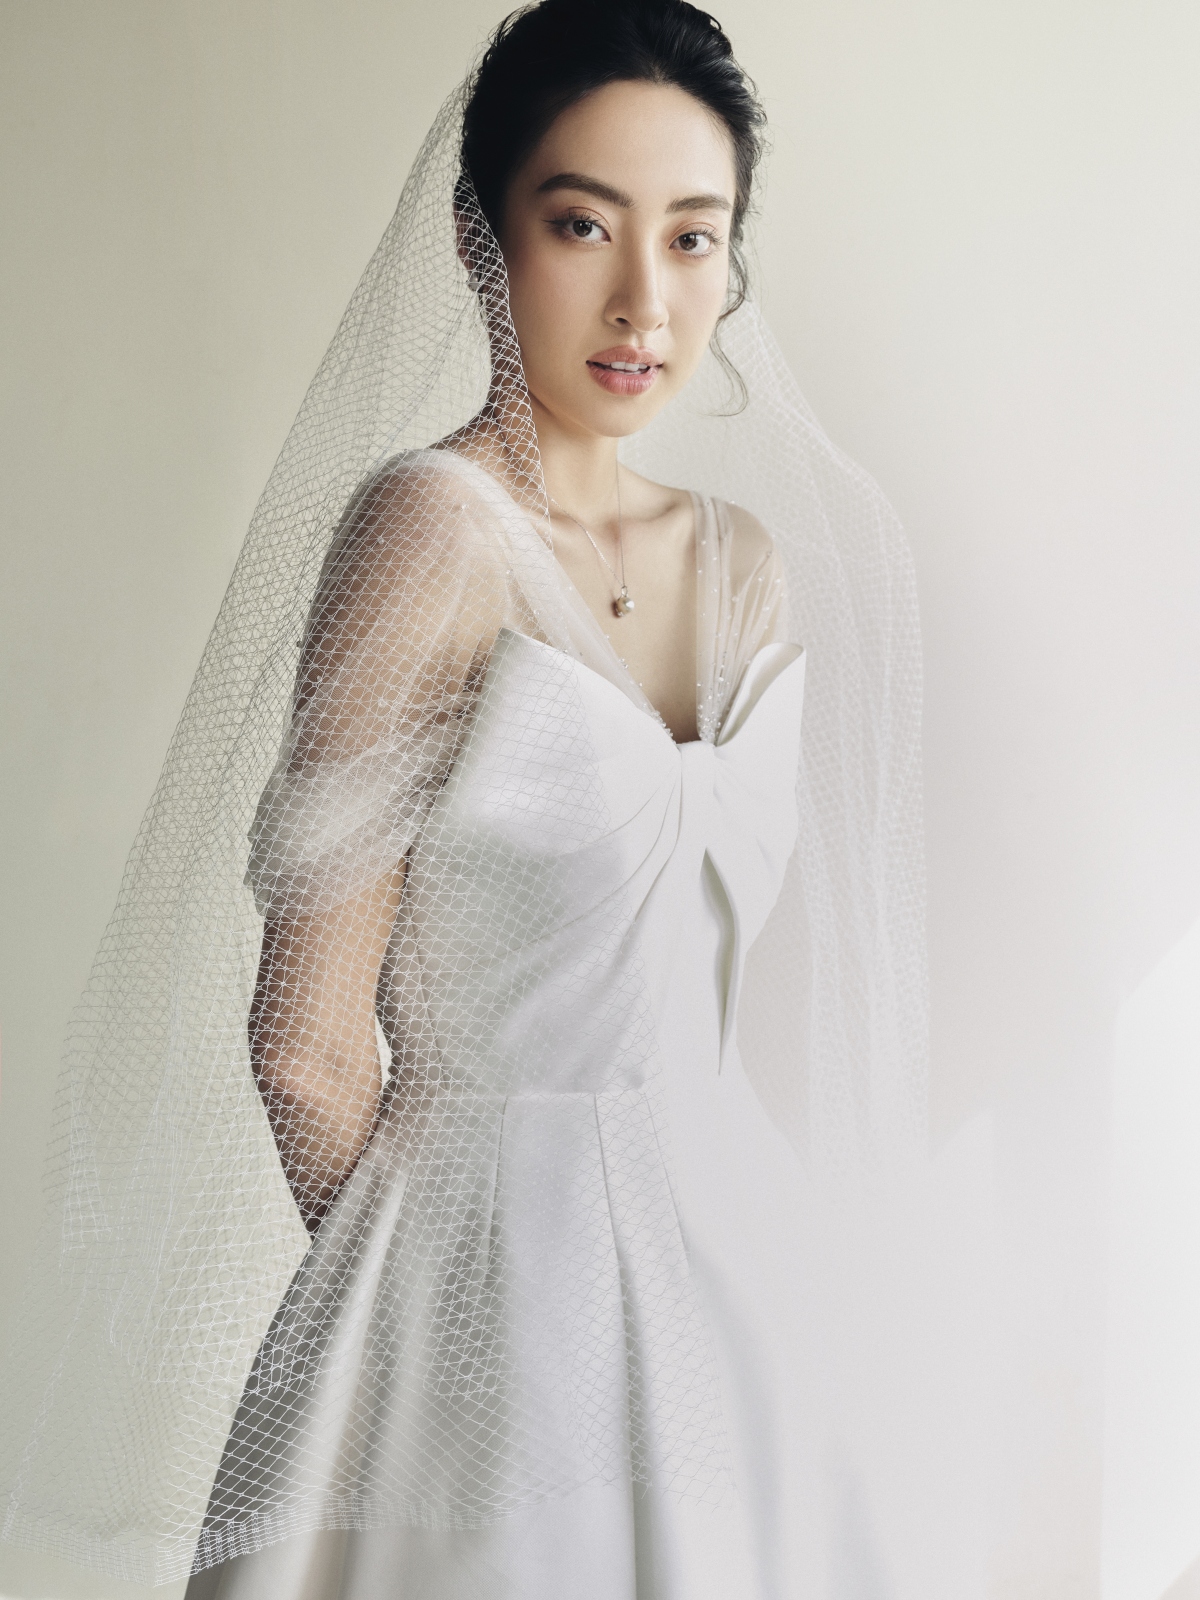 Hoa hậu Lương Thùy Linh làm cô dâu đẹp thanh khiết trong bộ ảnh mới - Ảnh 6.